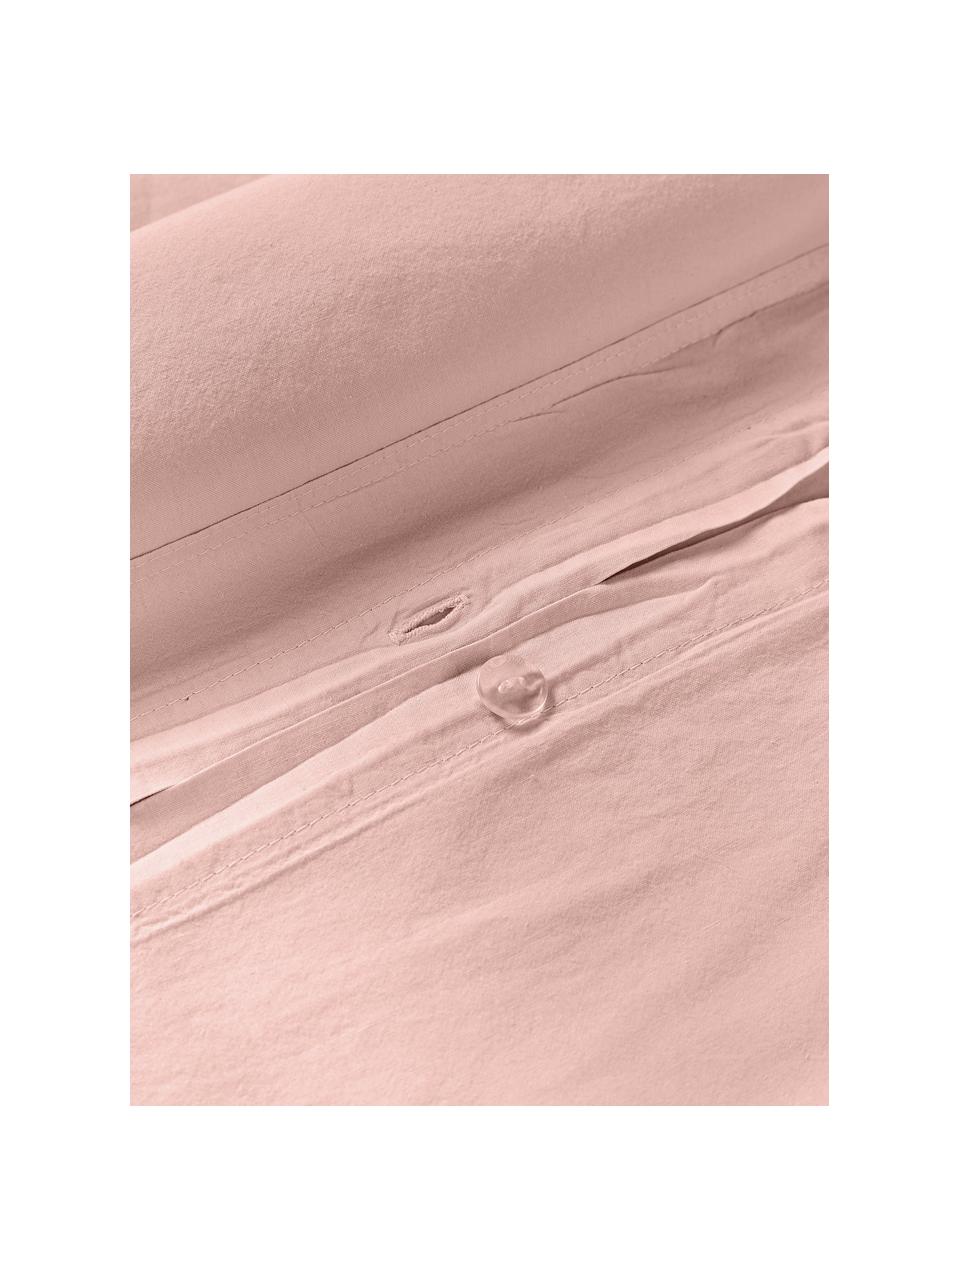 Gewaschener Baumwoll-Bettdeckenbezug Darlyn, 100 % Baumwolle
Fadendichte 150 TC, Standard Qualität

Bettwäsche aus Baumwolle fühlt sich auf der Haut angenehm weich an, nimmt Feuchtigkeit gut auf und eignet sich für Allergiker.

Durch ein besonderes Waschungsverfahren erhält der Stoff eine robuste, unregelmässige Stonewash-Optik. Ausserdem wird der Stoff dadurch weich und geschmeidig im Griff und erhält eine natürliche Knitter-Optik, die kein Bügeln erfordert und Gemütlichkeit ausstrahlt.

Das in diesem Produkt verwendete Material ist schadstoffgeprüft und zertifiziert nach STANDARD 100 by OEKO-TEX®, 4265CIT, CITEVE., Peach, B 200 x L 200 cm